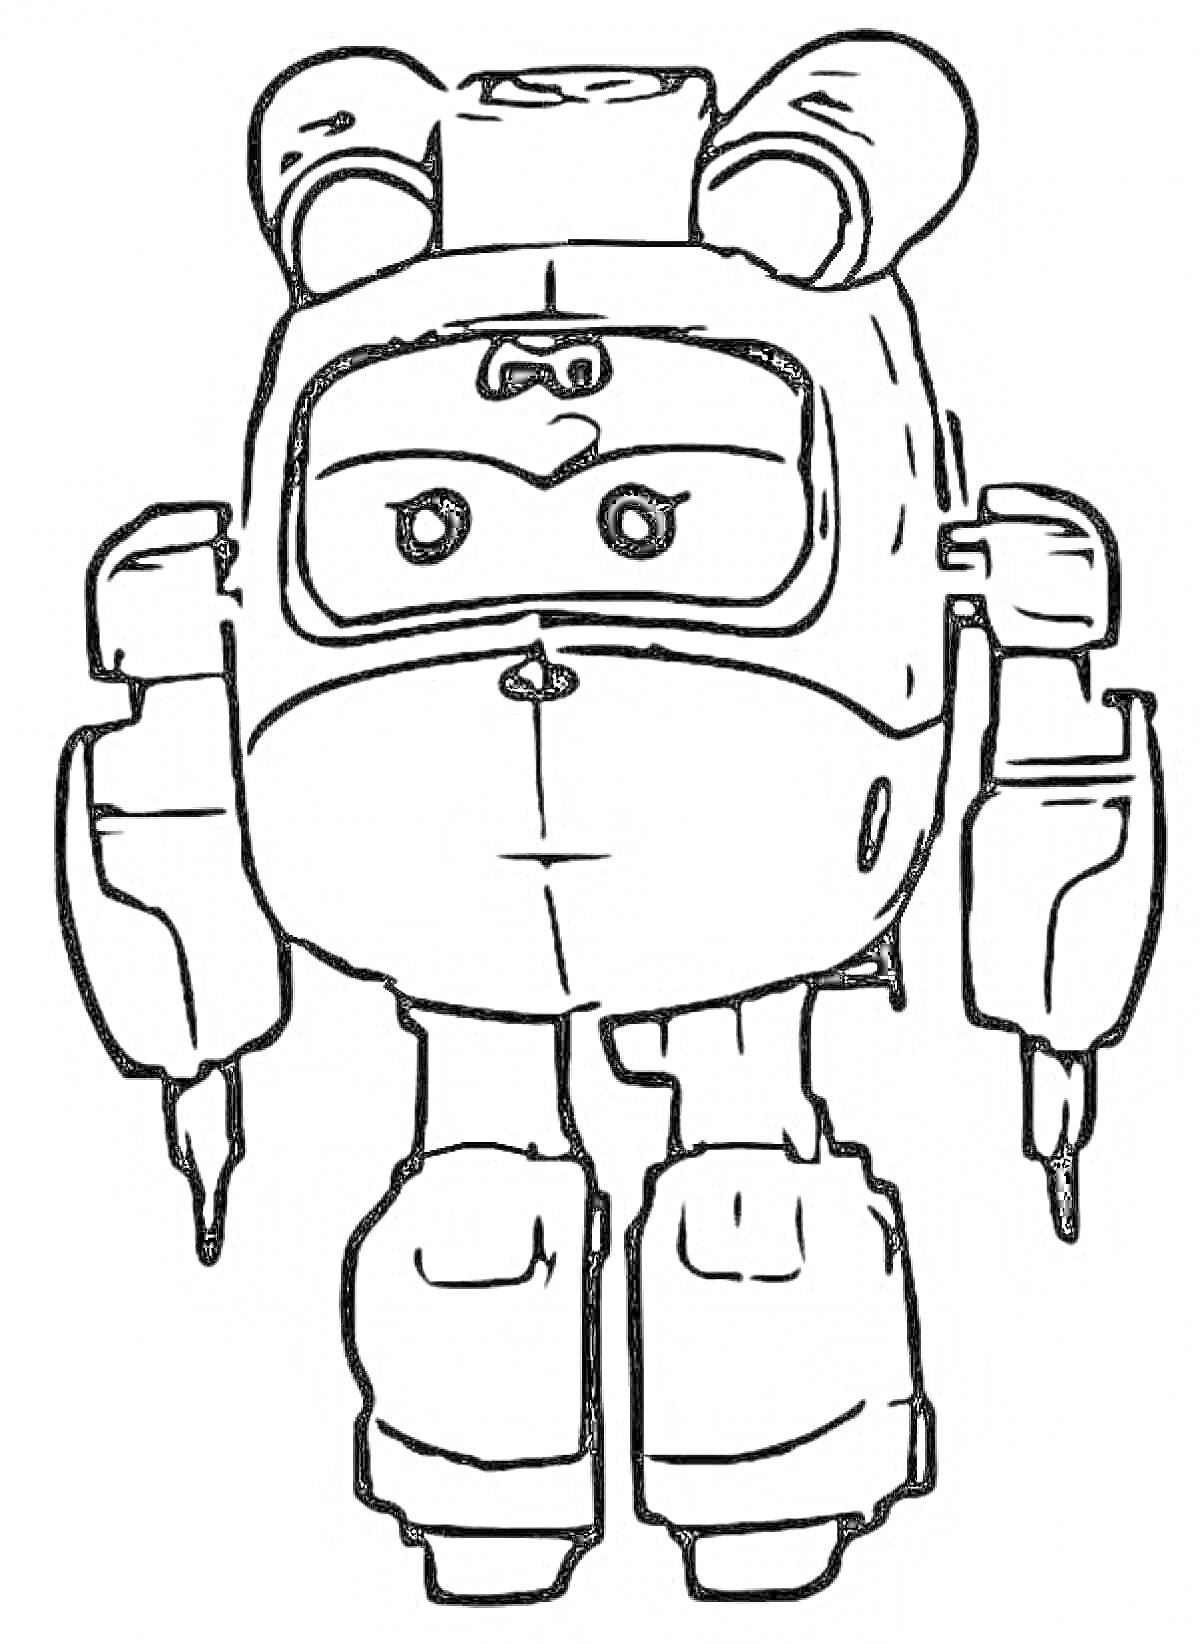 Раскраска Робот с двумя антеннами на голове и большими руками